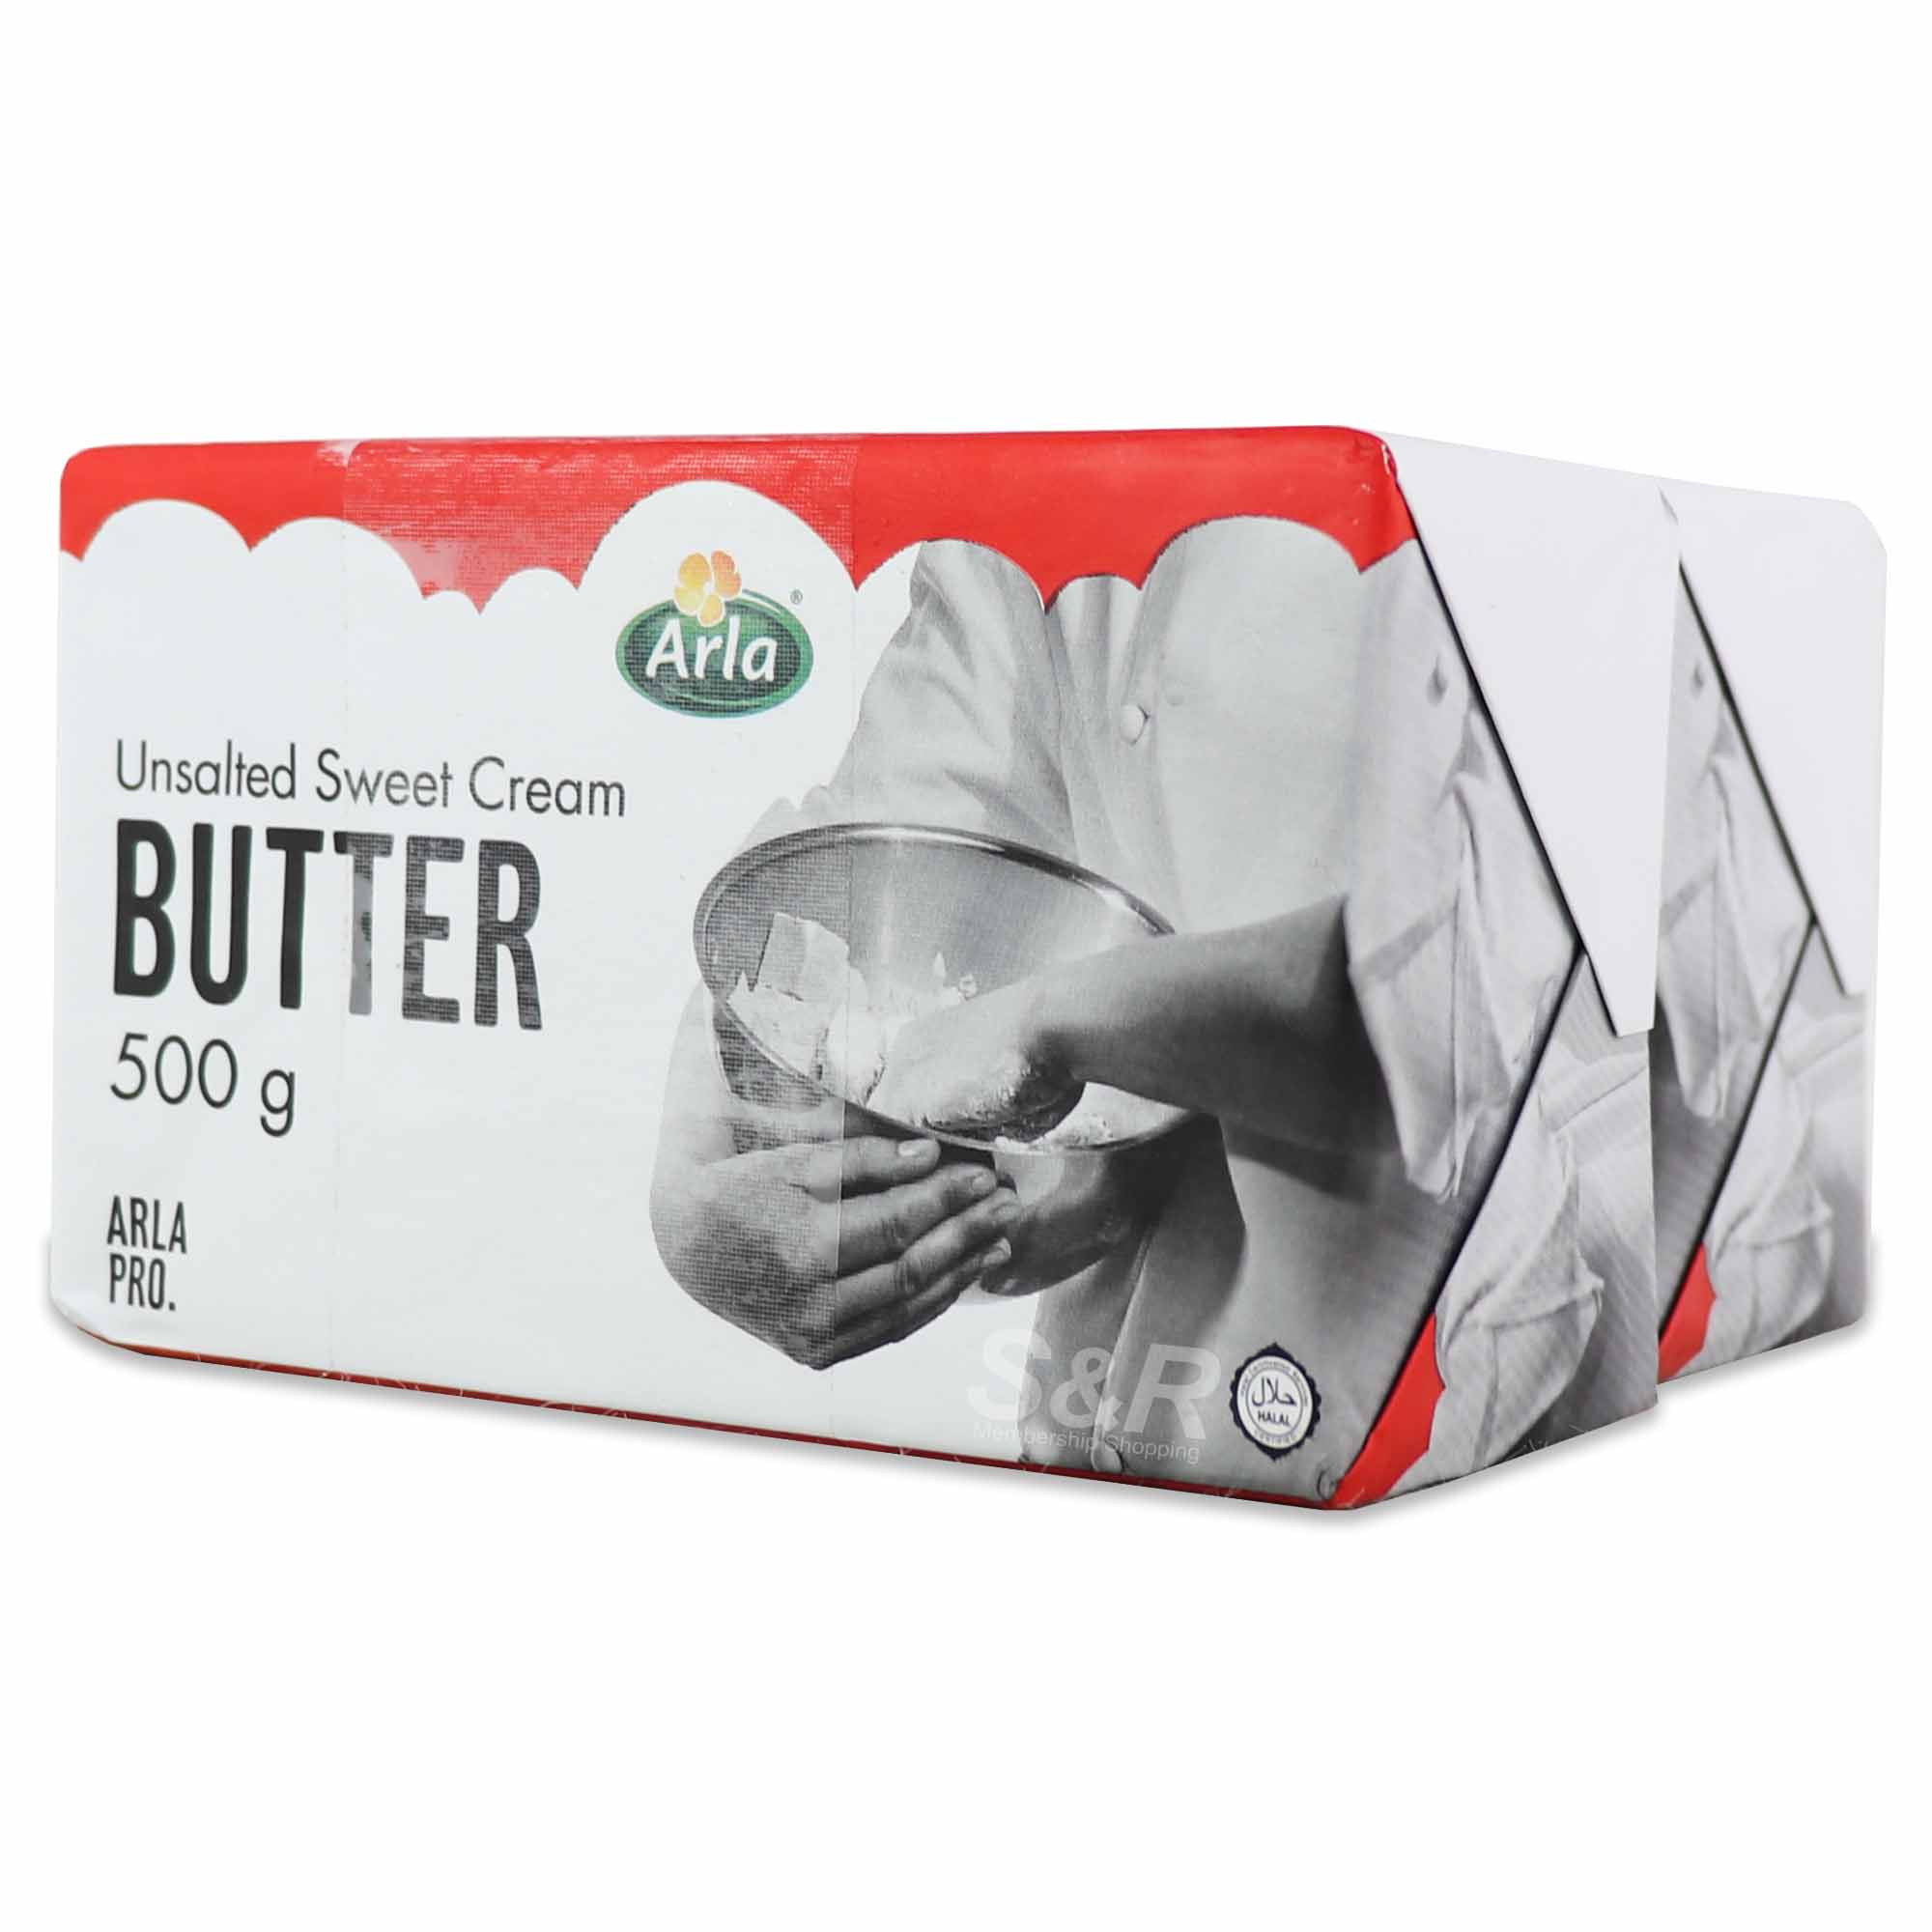 Arla Pro Unsalted Sweet Cream Butter 500g